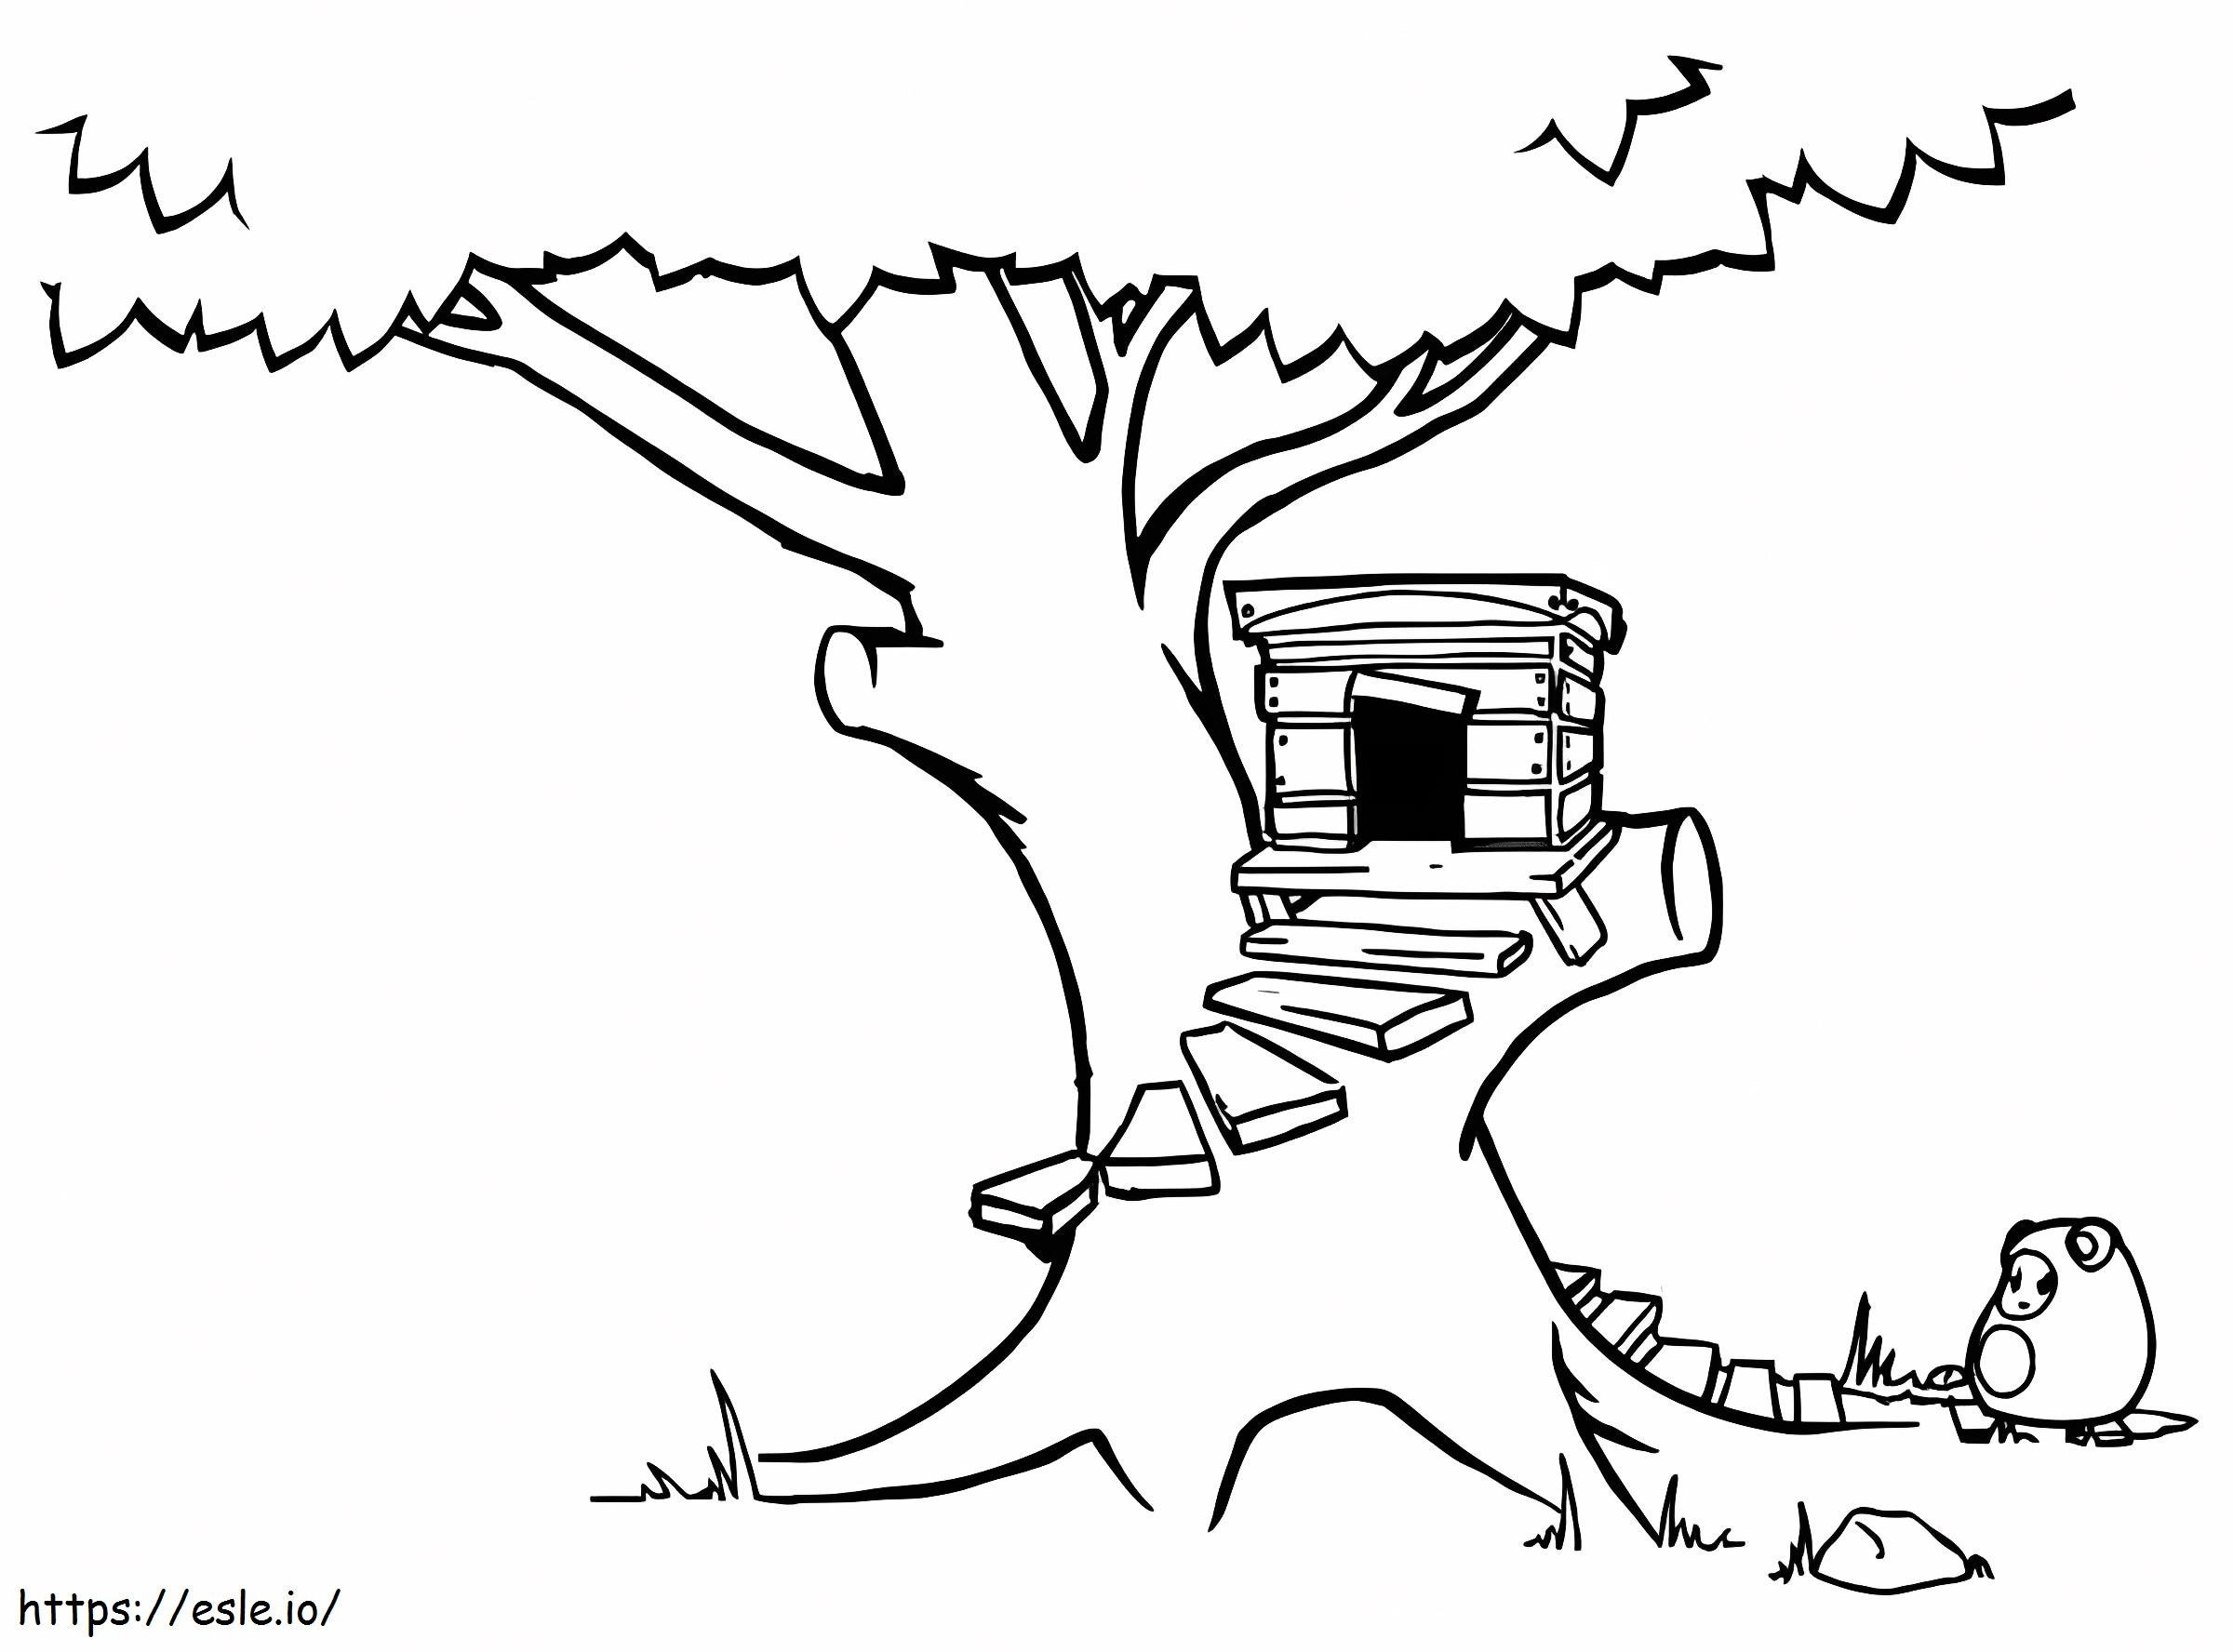  Casa del árbol con escalera redonda Página Magic Pictures Sheets para colorear